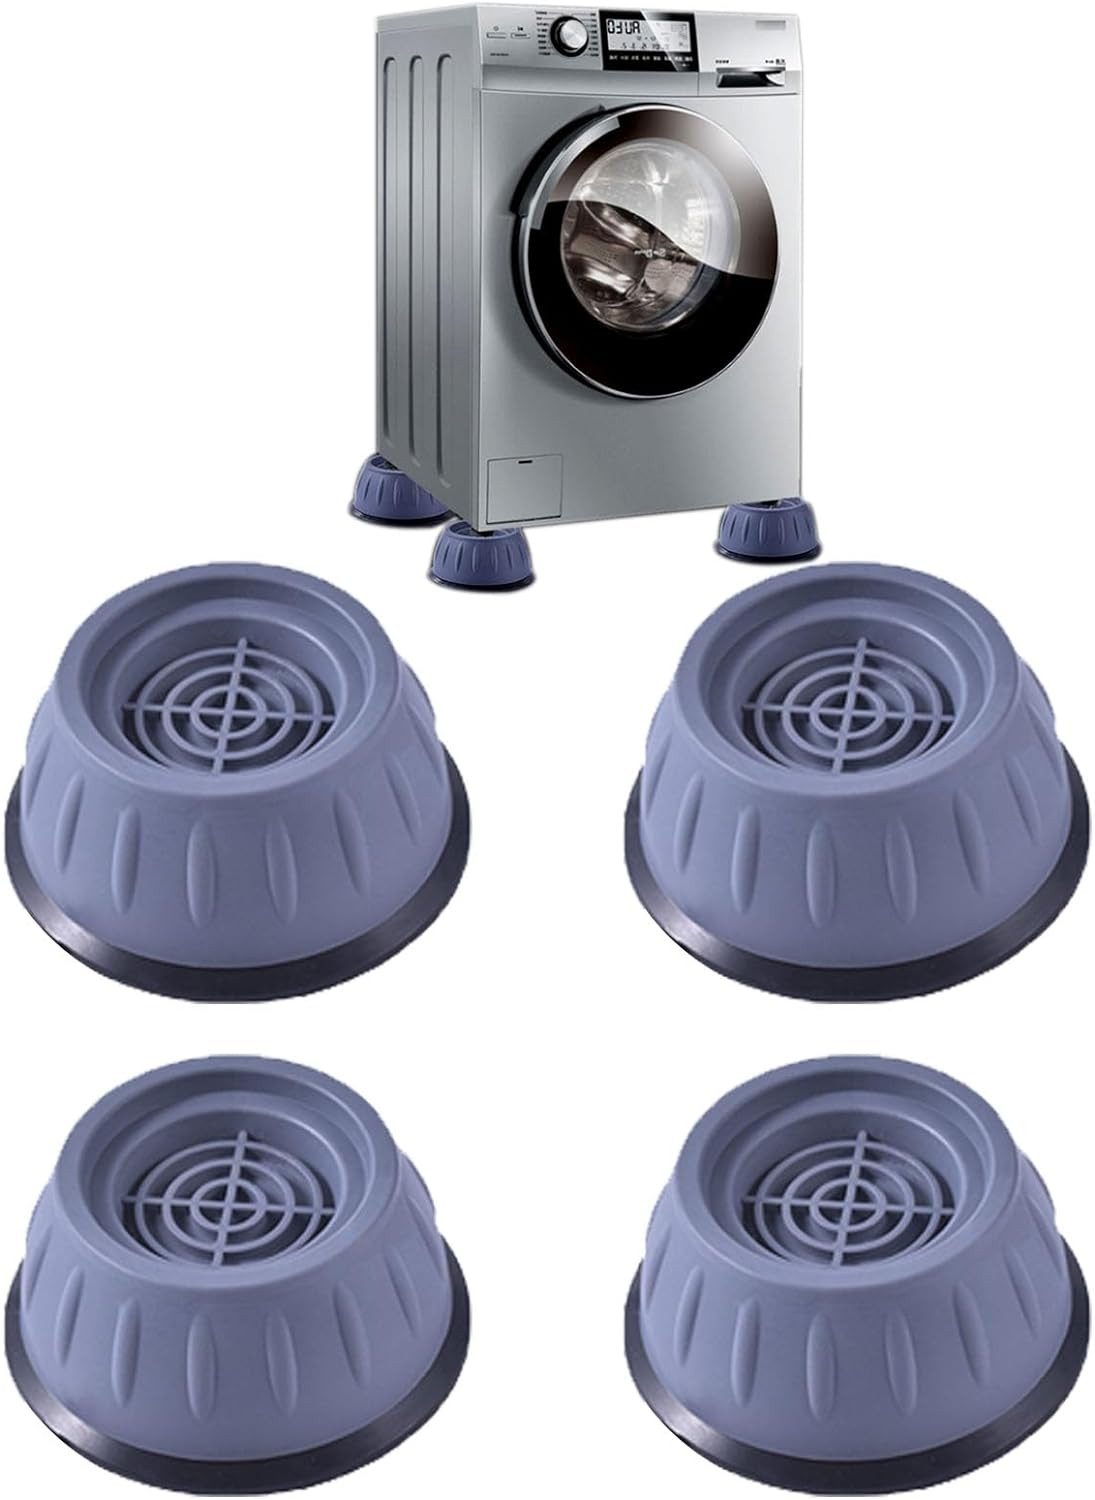 Brücke Vibrationsdämpfer 4 Stück Stützelemente Gegen Vibrationen für Waschmaschinen, (4-St), Geräuschreduzierende Waschmaschinenfüße schützen die Geräte